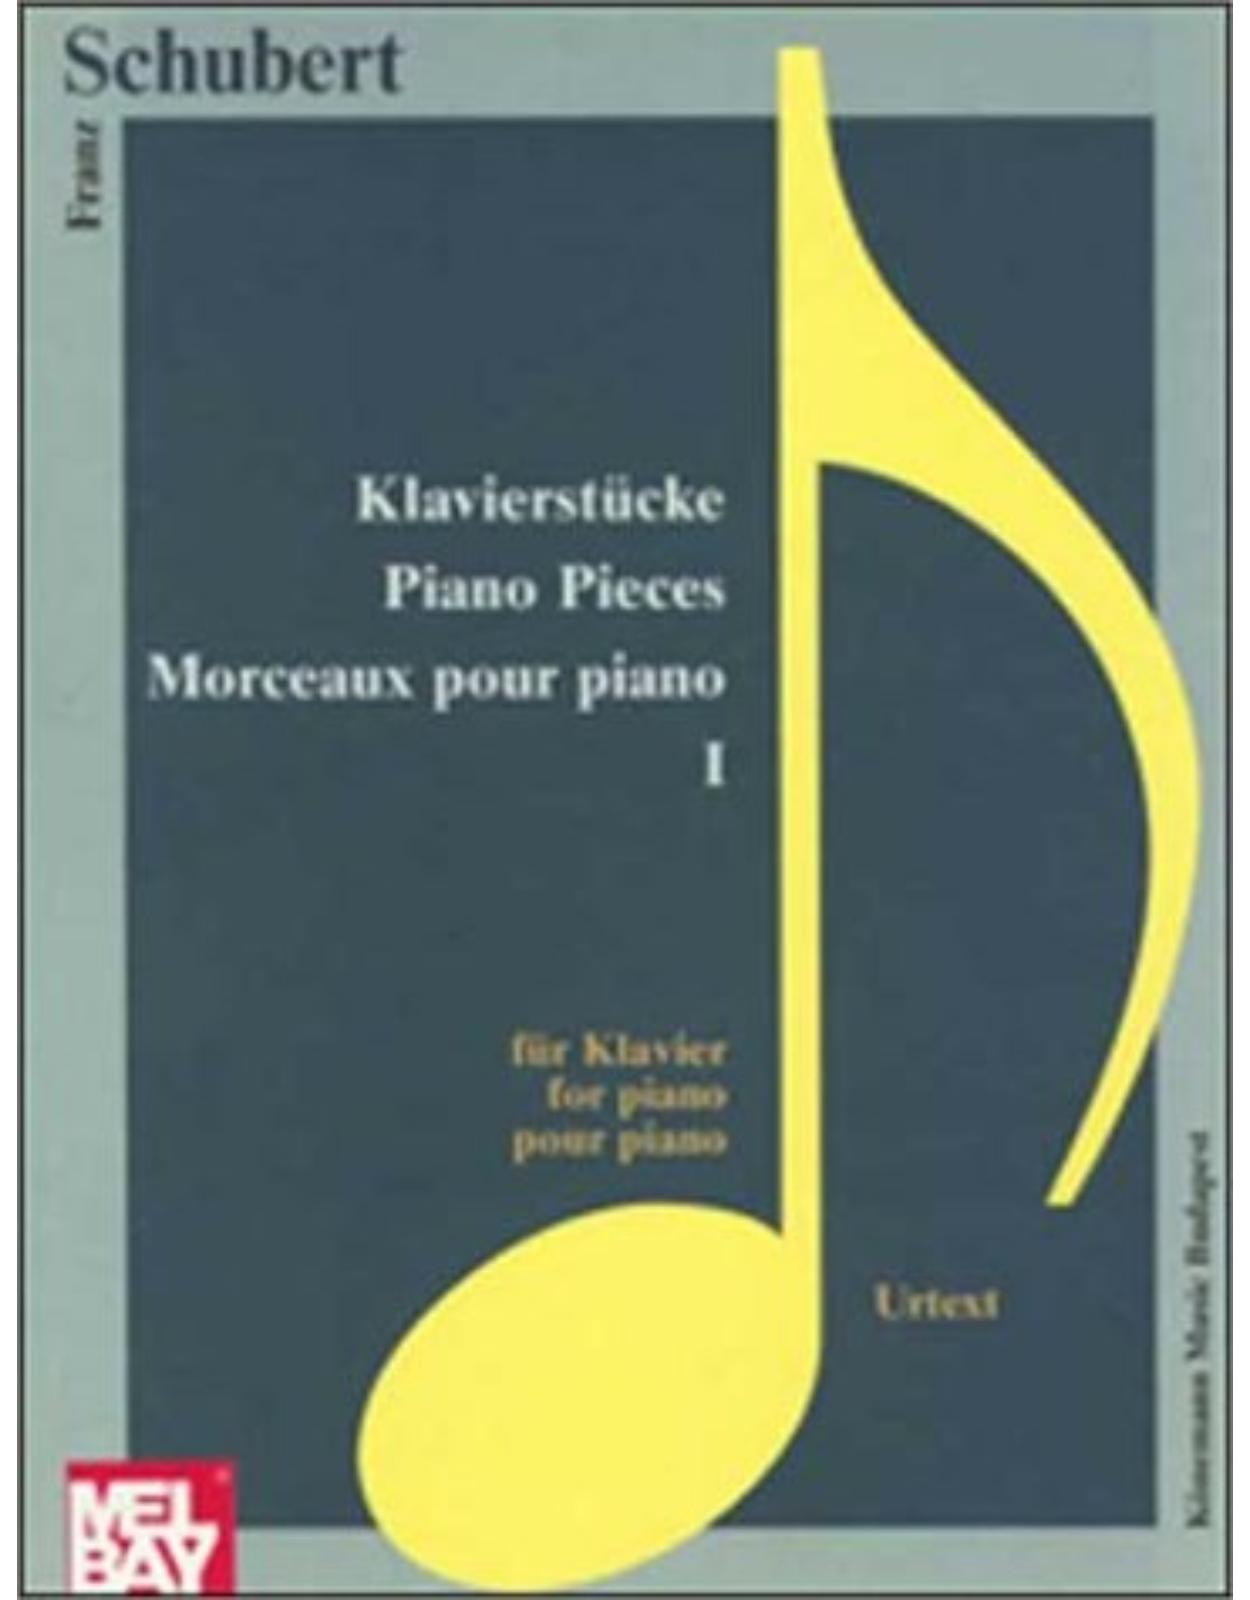 Klavierstücke / piano pieces / morceaux pour piano I